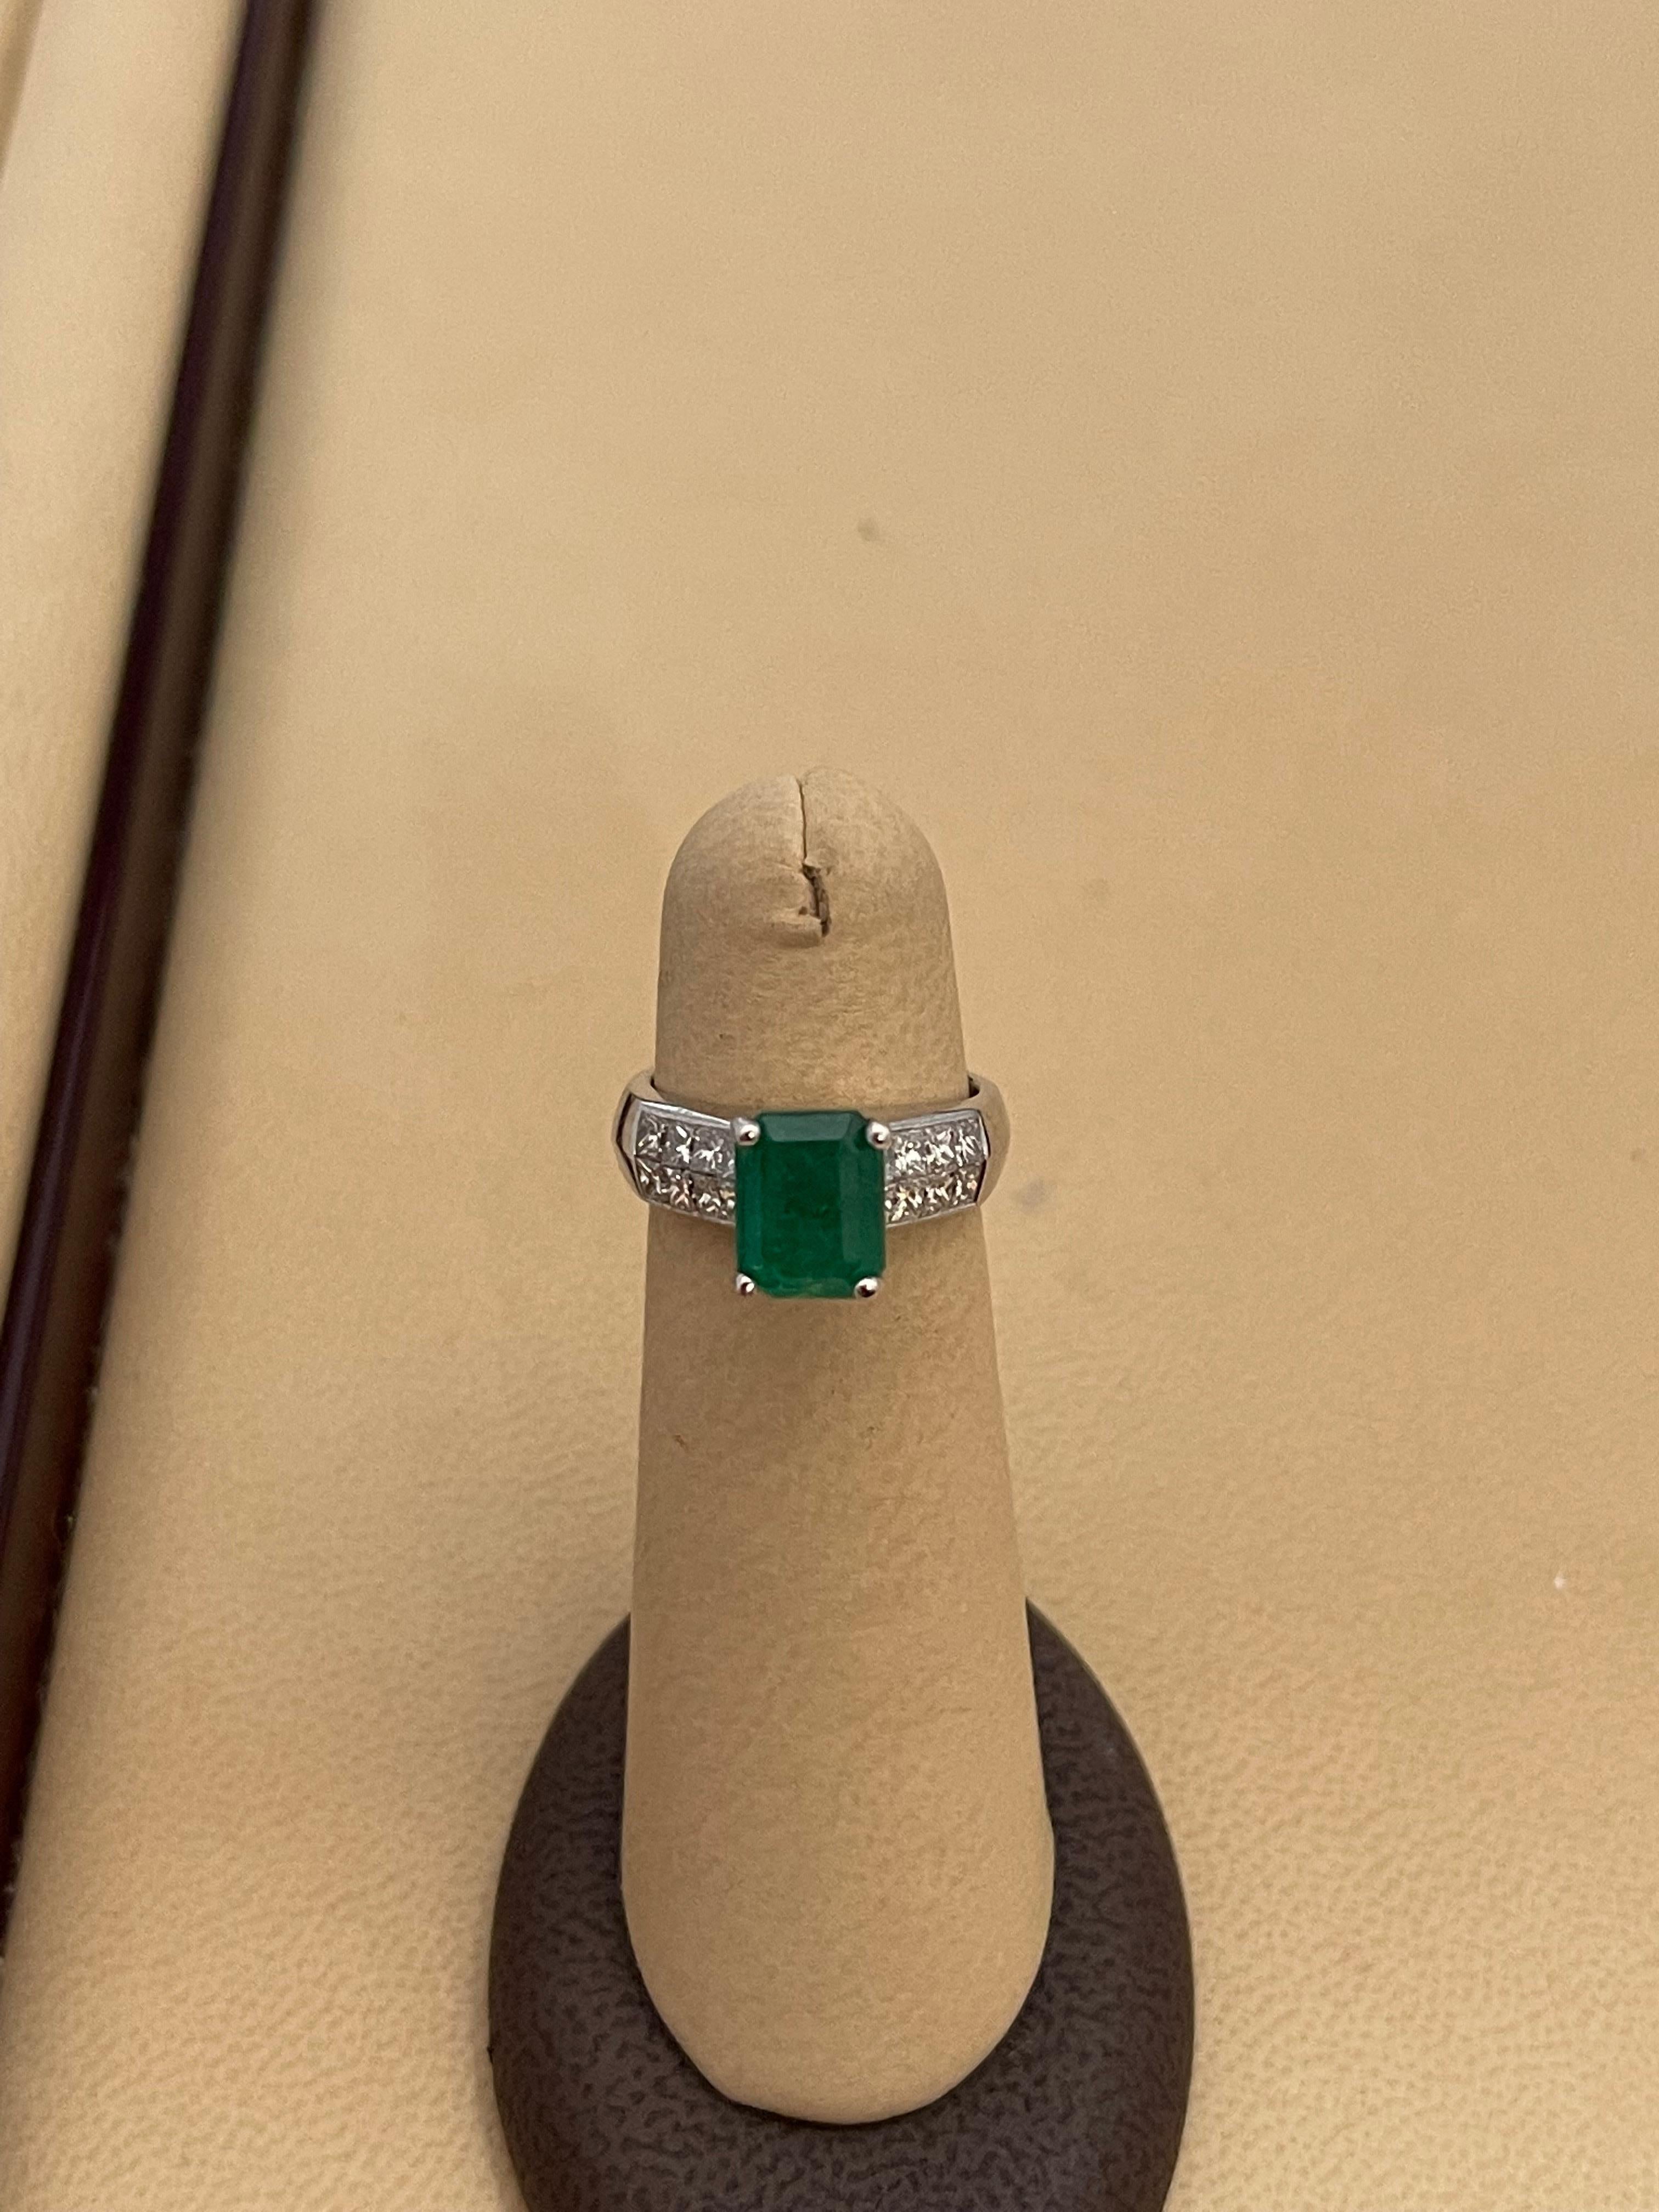 Natural 3 Carat Emerald Cut Emerald & 1 Carat Diamond Ring Platinum 10